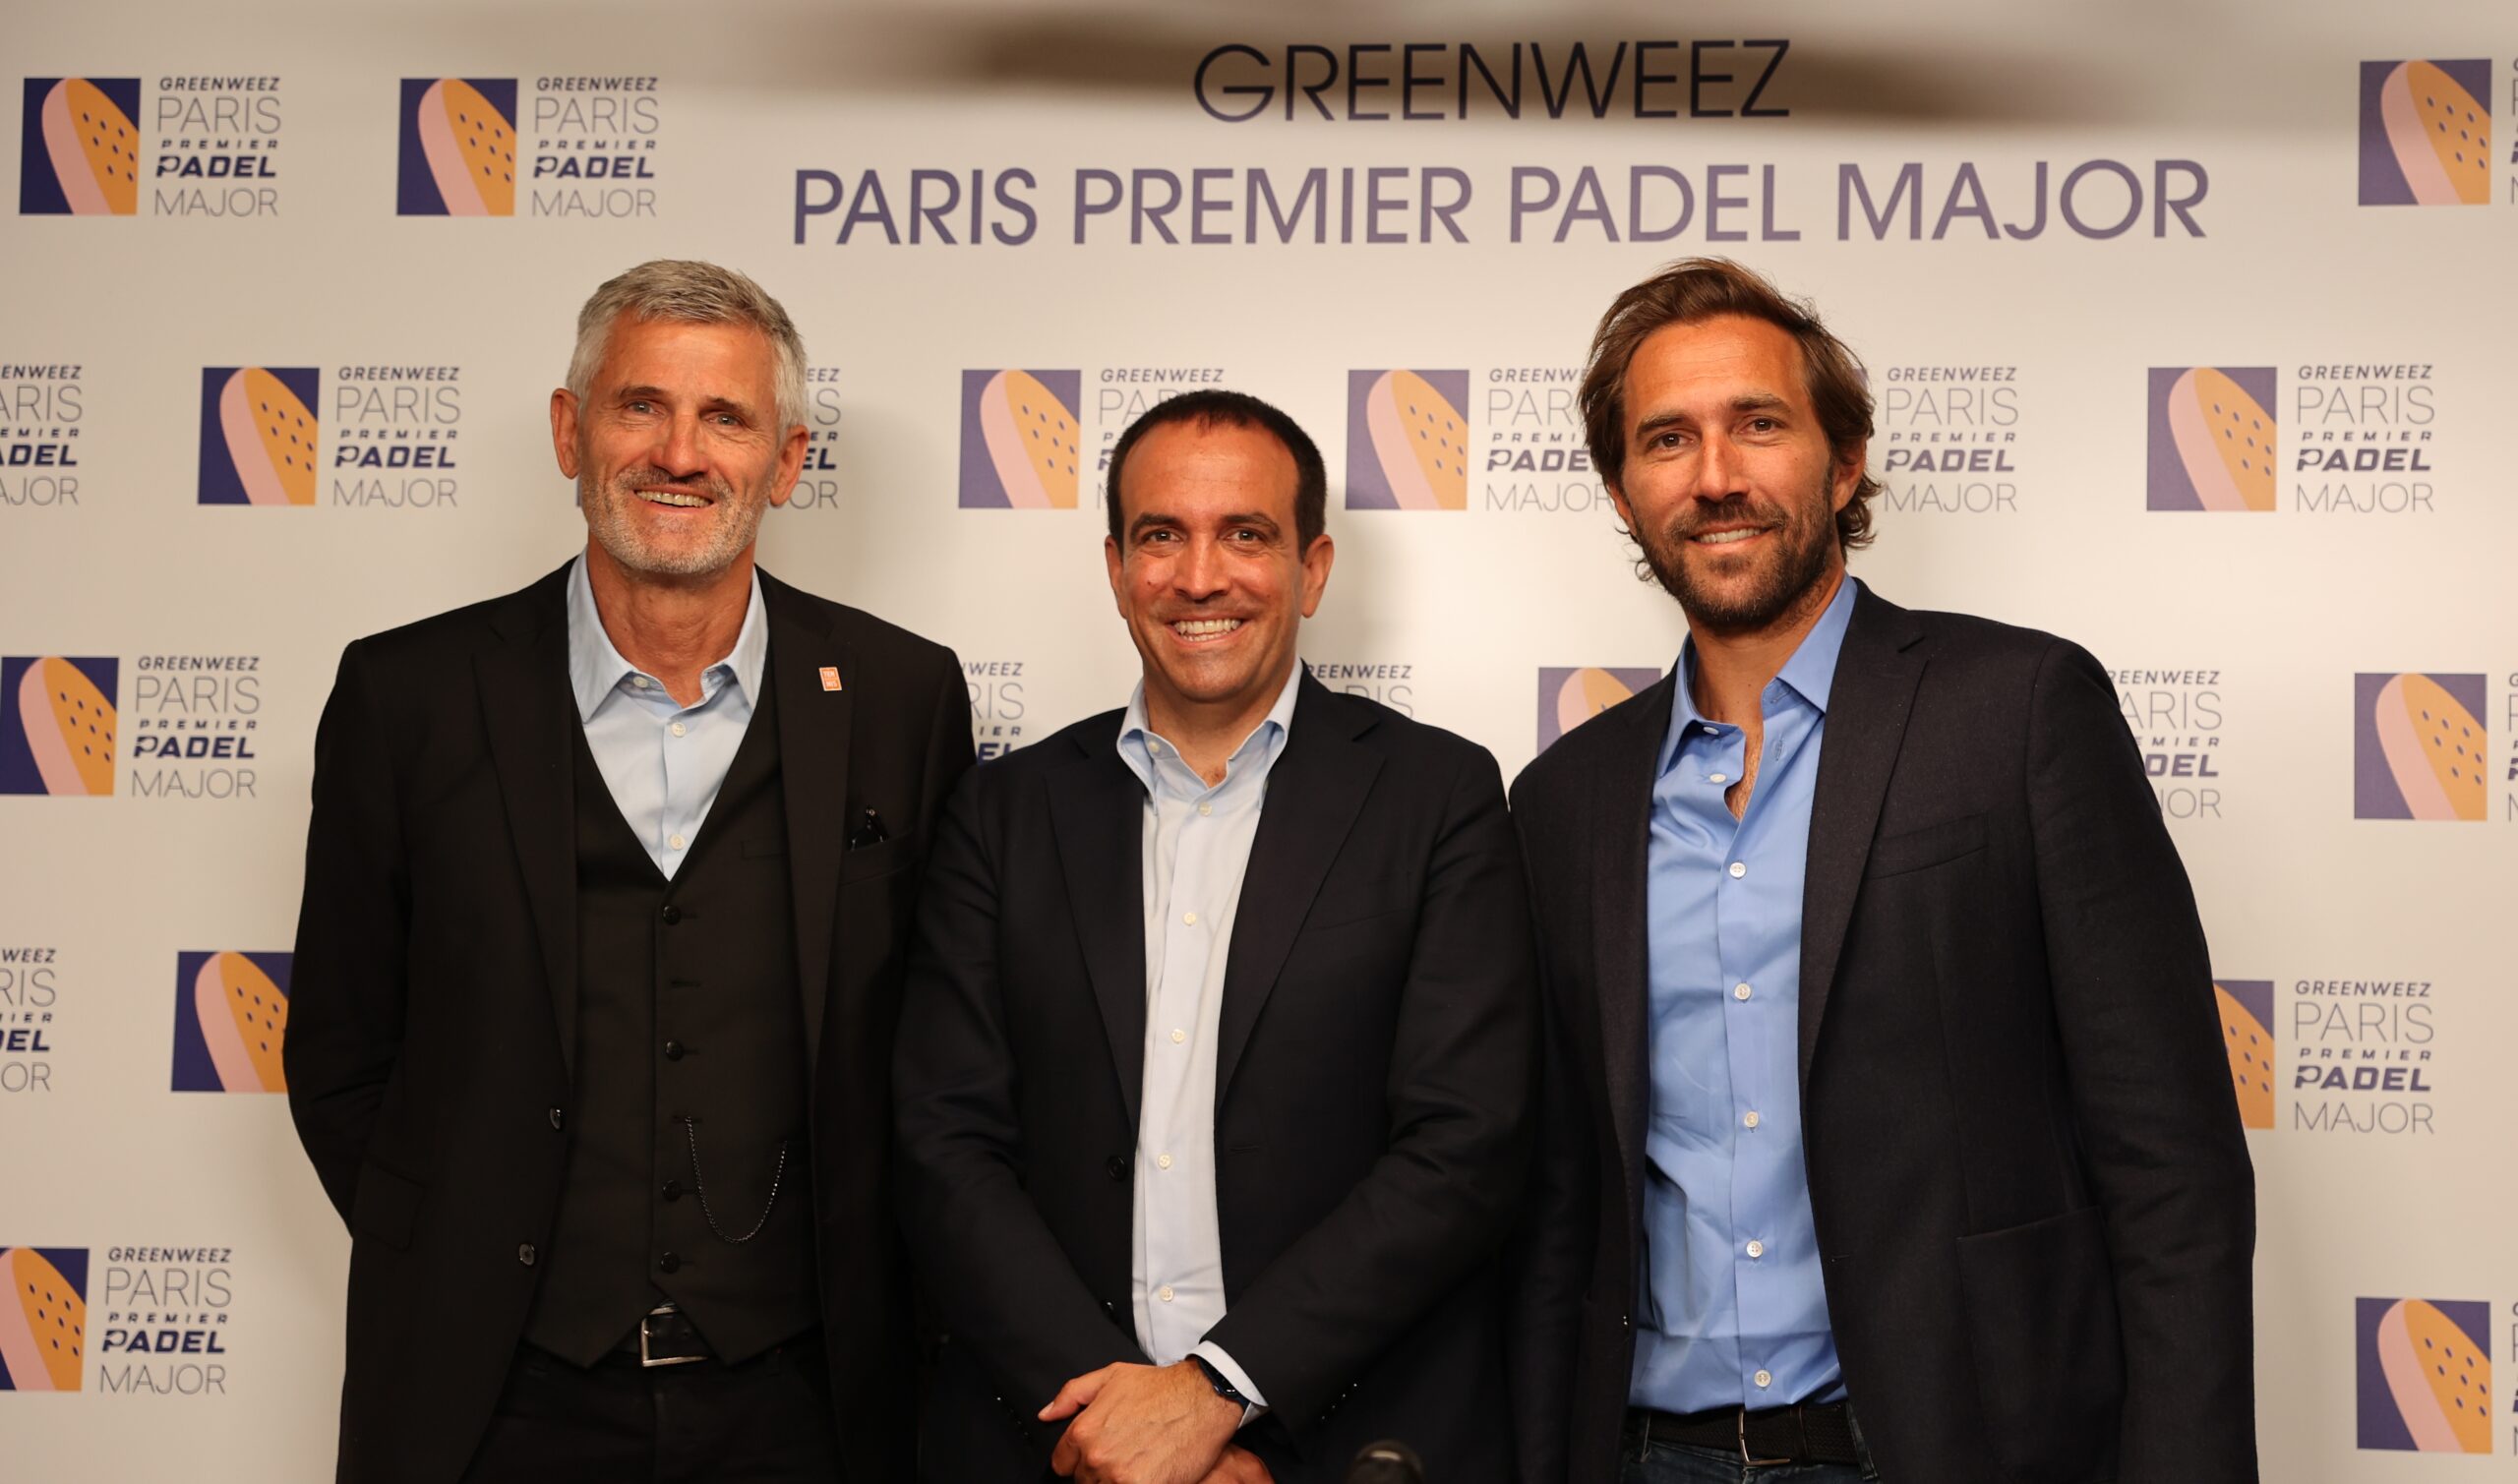 Das Roland-Garros-Stadion ist bereit, die zu begrüßen Greenweez Paris Premier Padel Major